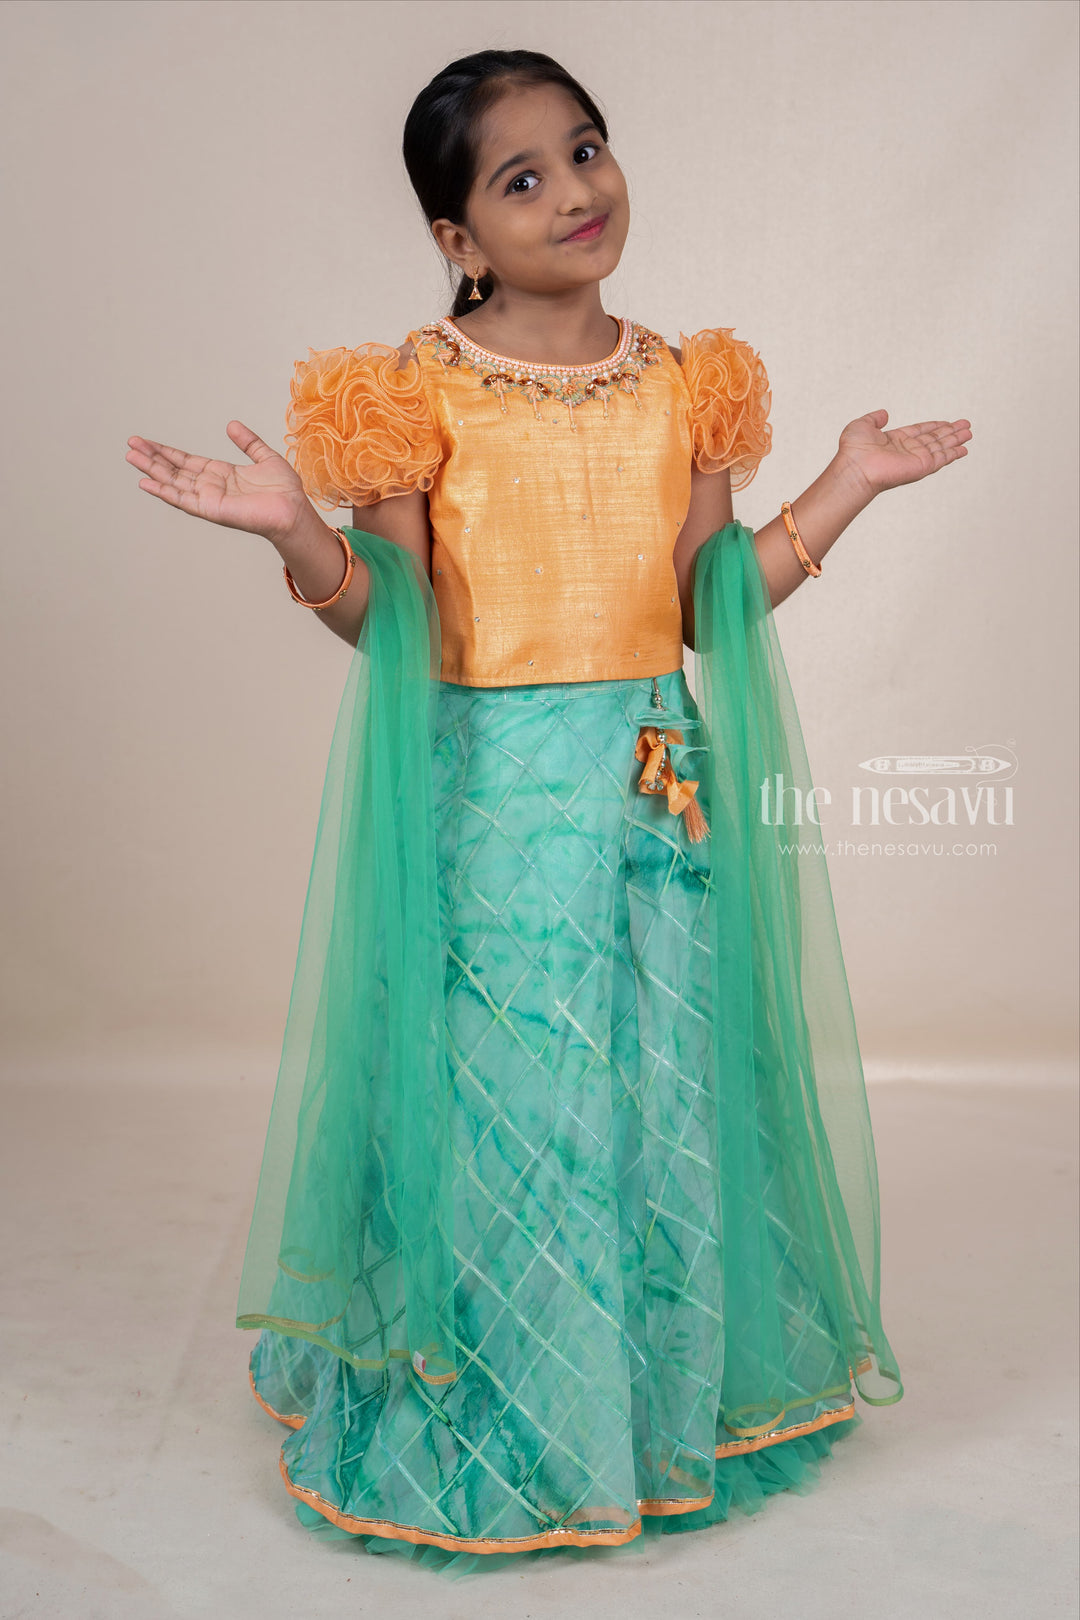 The Nesavu Lehenga & Ghagra Hand Embroidery Orange With Green Soft Net Lehenga For Baby Girls psr silks Nesavu